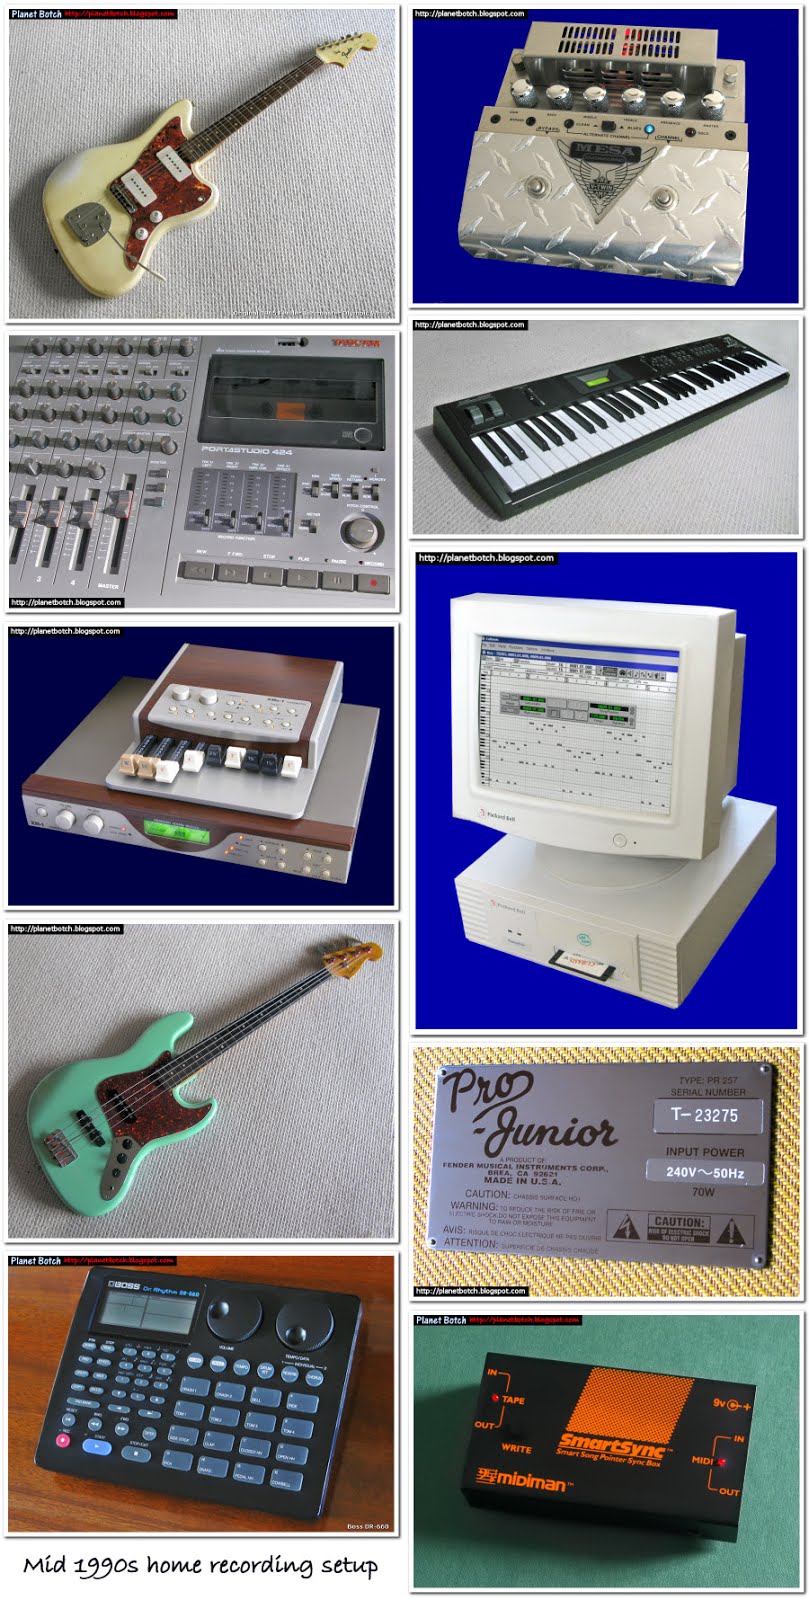 Начиная сверху слева и 'читая' вышеприведенные фотографии как книгу, инструменты и устройства: оригинальная гитара Fender Jazzmaster 1965 года, Mesa V-Twin клапанный предусилитель для гитары, кассетный магнитофон Tascam 424 Portastudio, цифровой синтезатор Korg X5, органный модуль Hammond XM1, Packard Bell 80486 PC под управлением Cubasis MIDI, Fender Japan Jazz Bass, клапанный комбинированный усилитель для гитары Fender Pro Junior, цифровая ударная установка Boss DR-660, синхронизация Smartsync MIDI. Я также использовал микшер Samson Mixpad, FX-процессор Boss ME-5 и пару микрофонов Sennheiser - один для вокала и один для гитары. Я освоил аудиокассету с высоким током подмагничивания, используя стереокассетную деку Yamaha K-340.